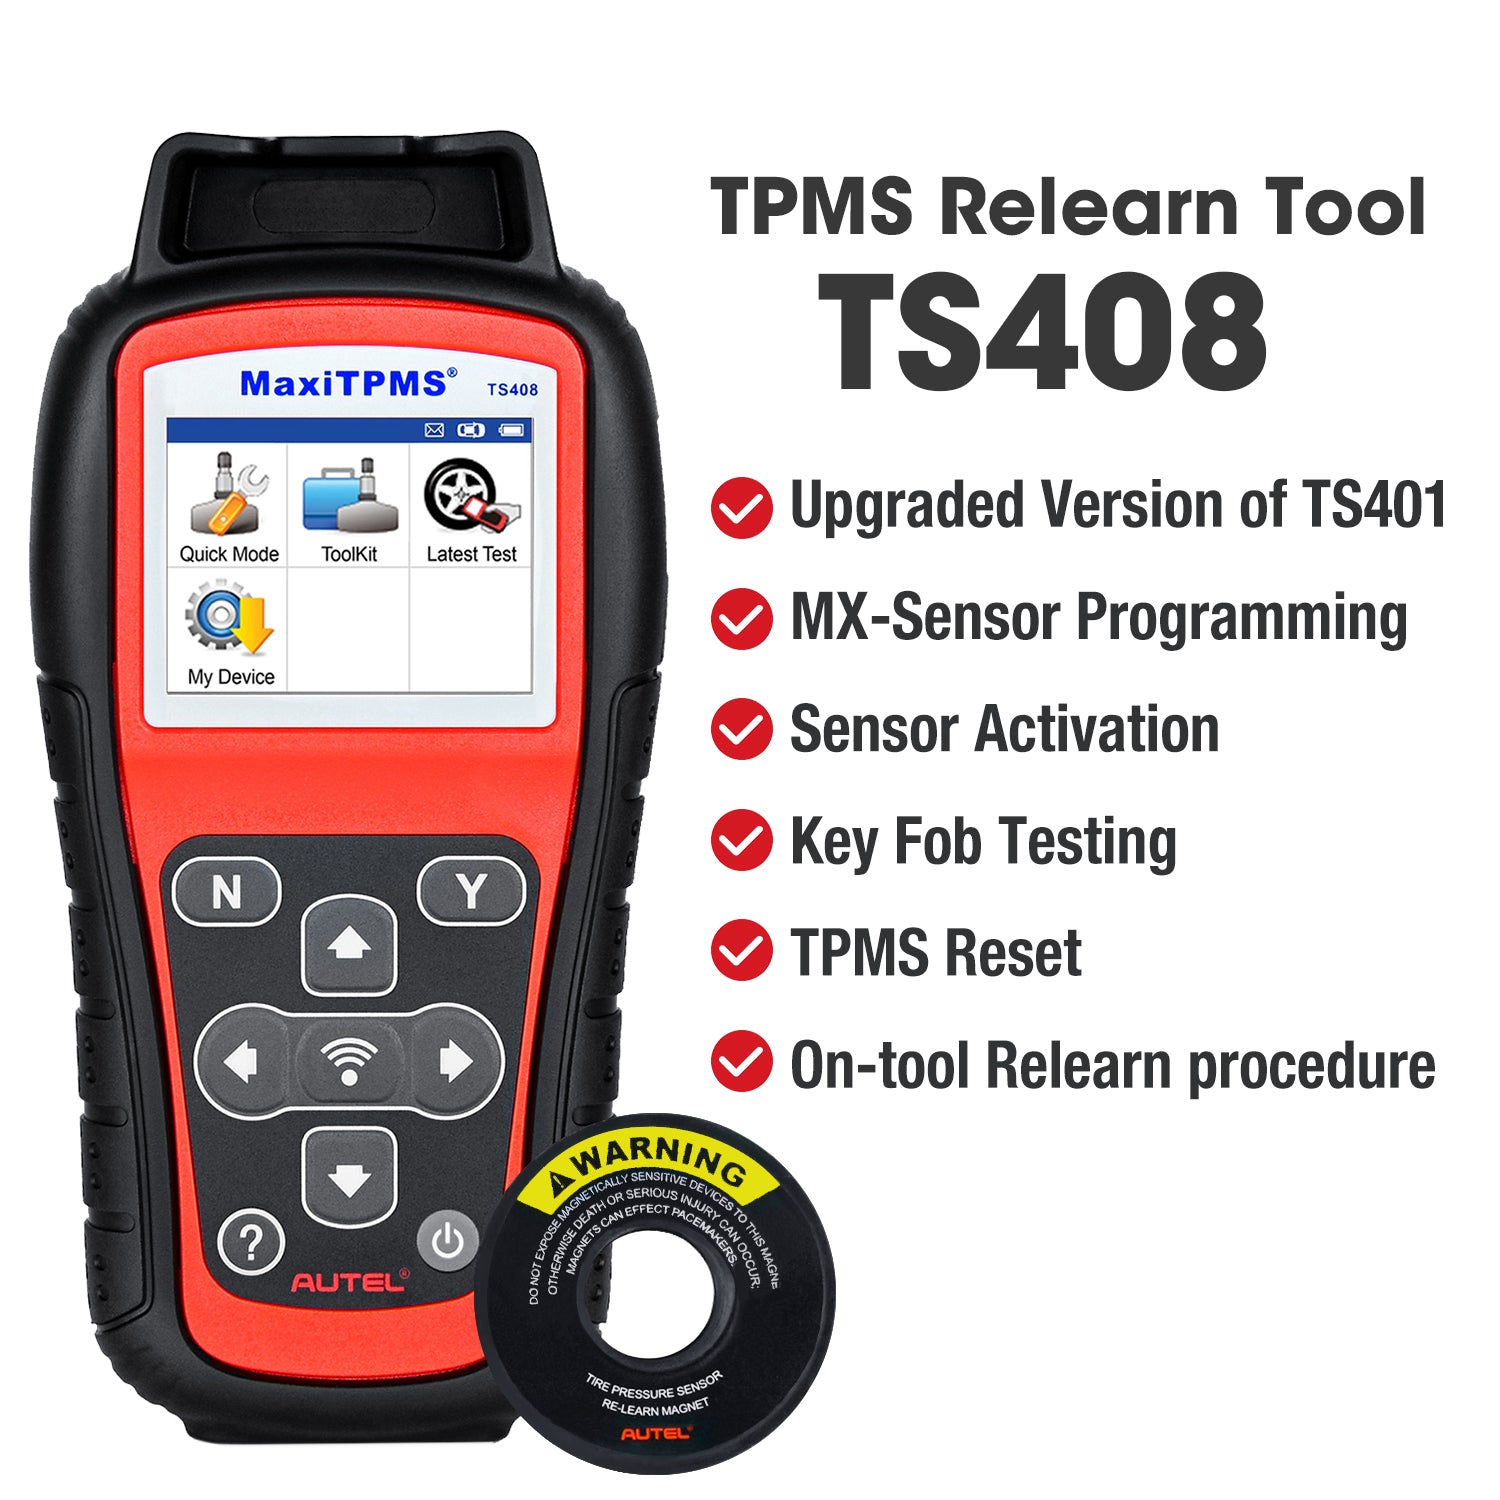 Atuel Maxitpms TS408 tpms diagnostic & service tool functions